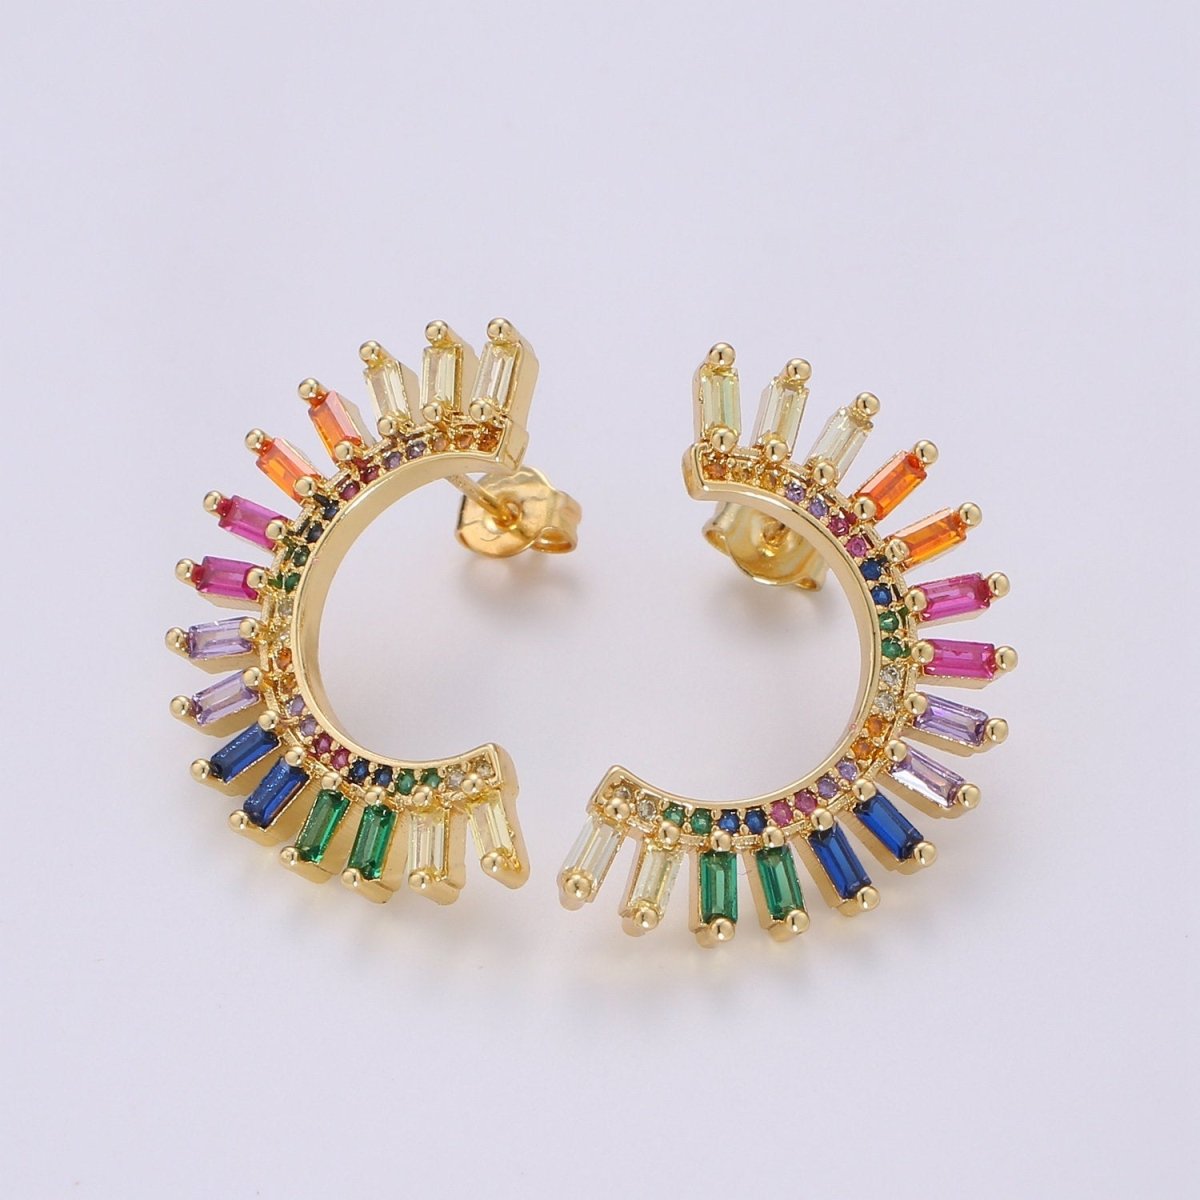 Super Cute Rainbow Studs • Moon Rainbow Earrings • Gold Multi Color Stone Earrings • Fan Studs • Kawaii Style Statement Earring Q-314 - DLUXCA